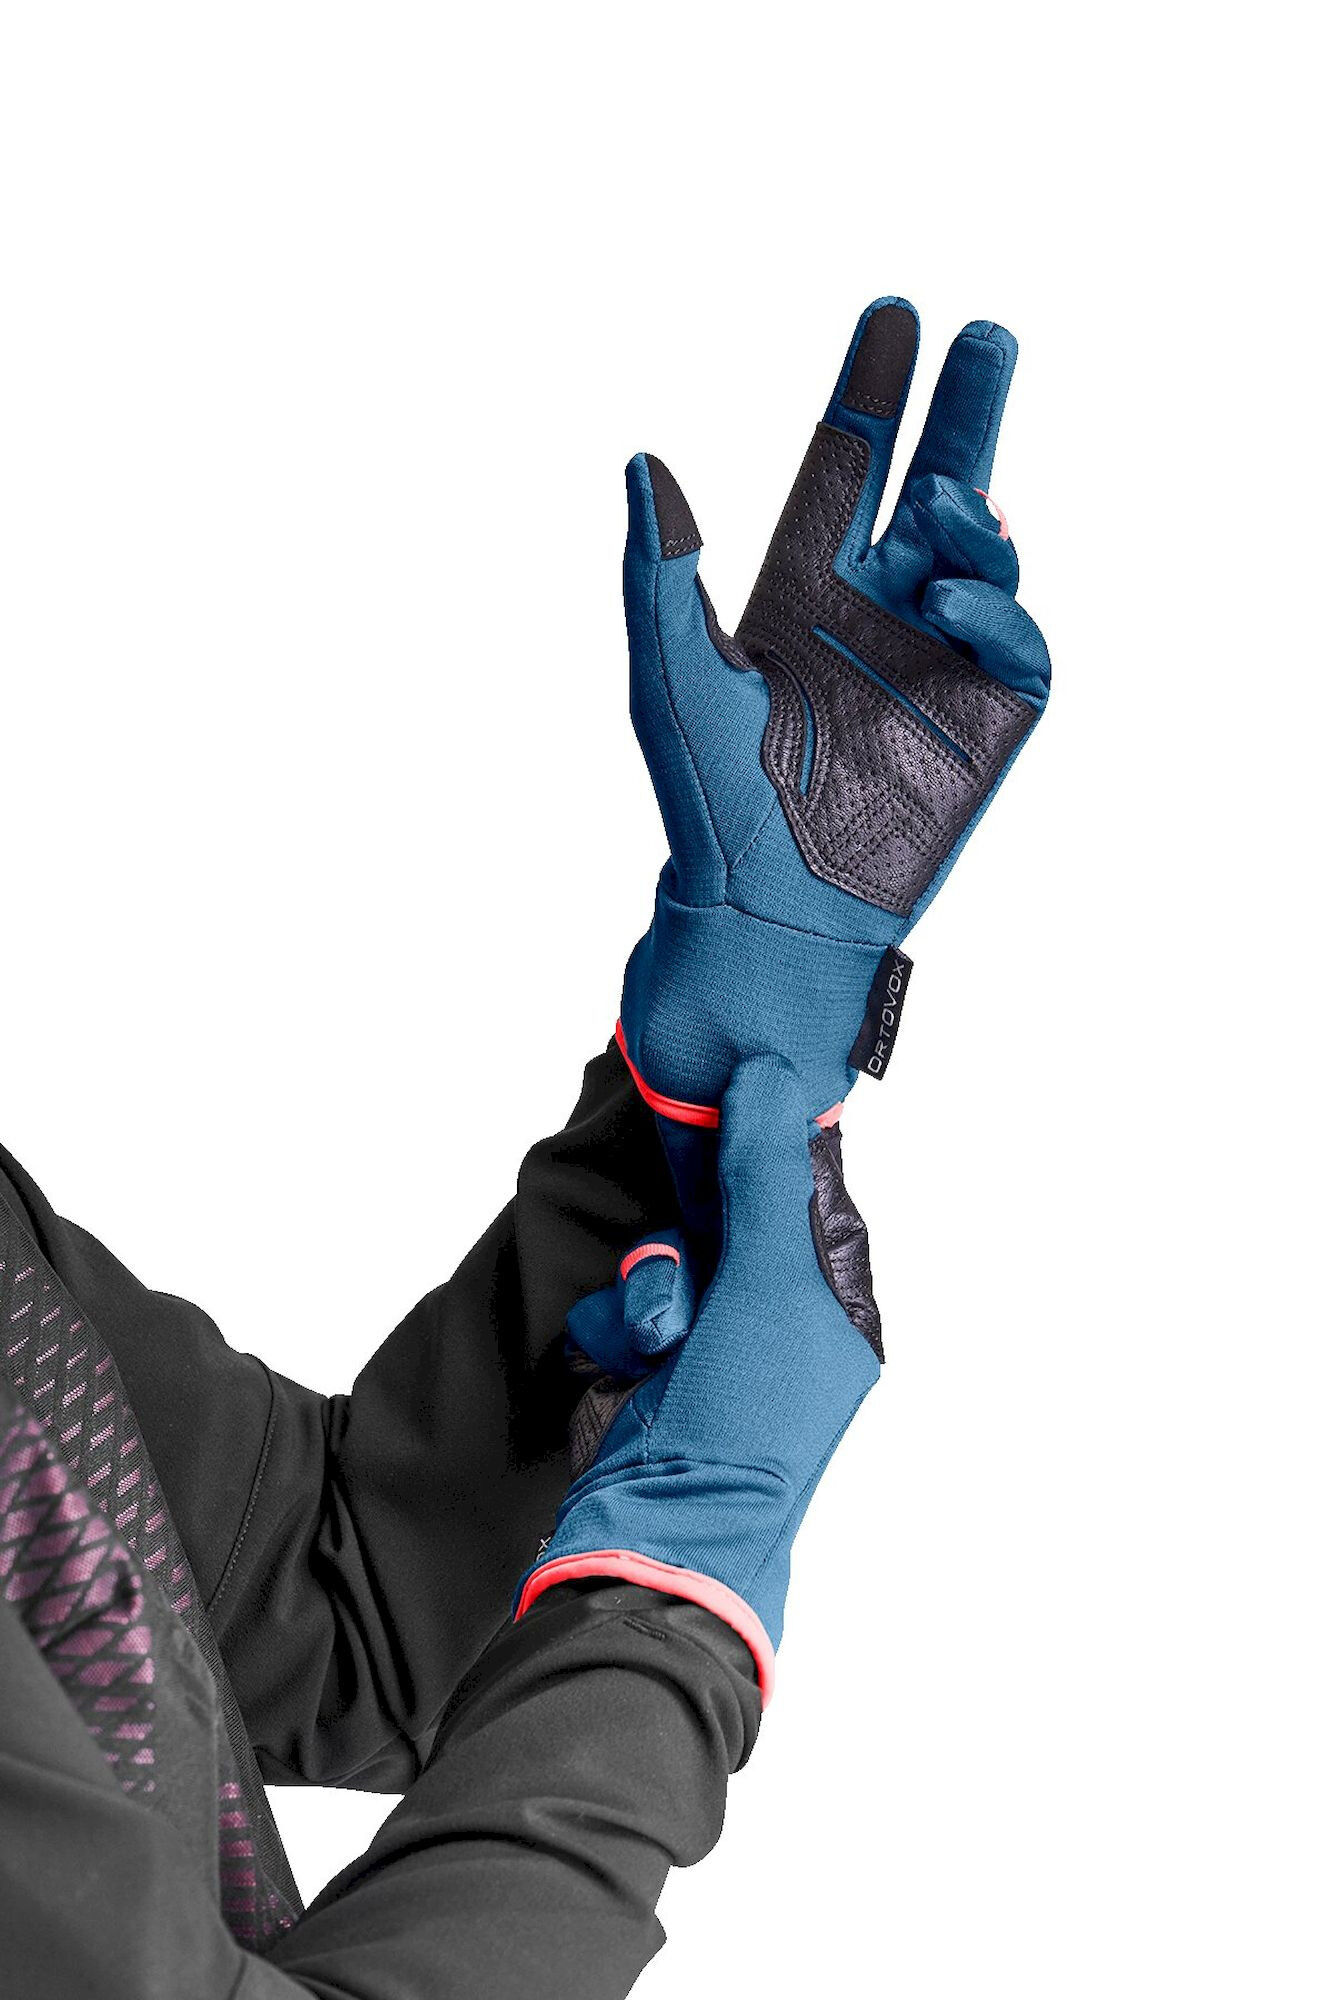 Ortovox Fleece Light Glove - Ski gloves - Women's